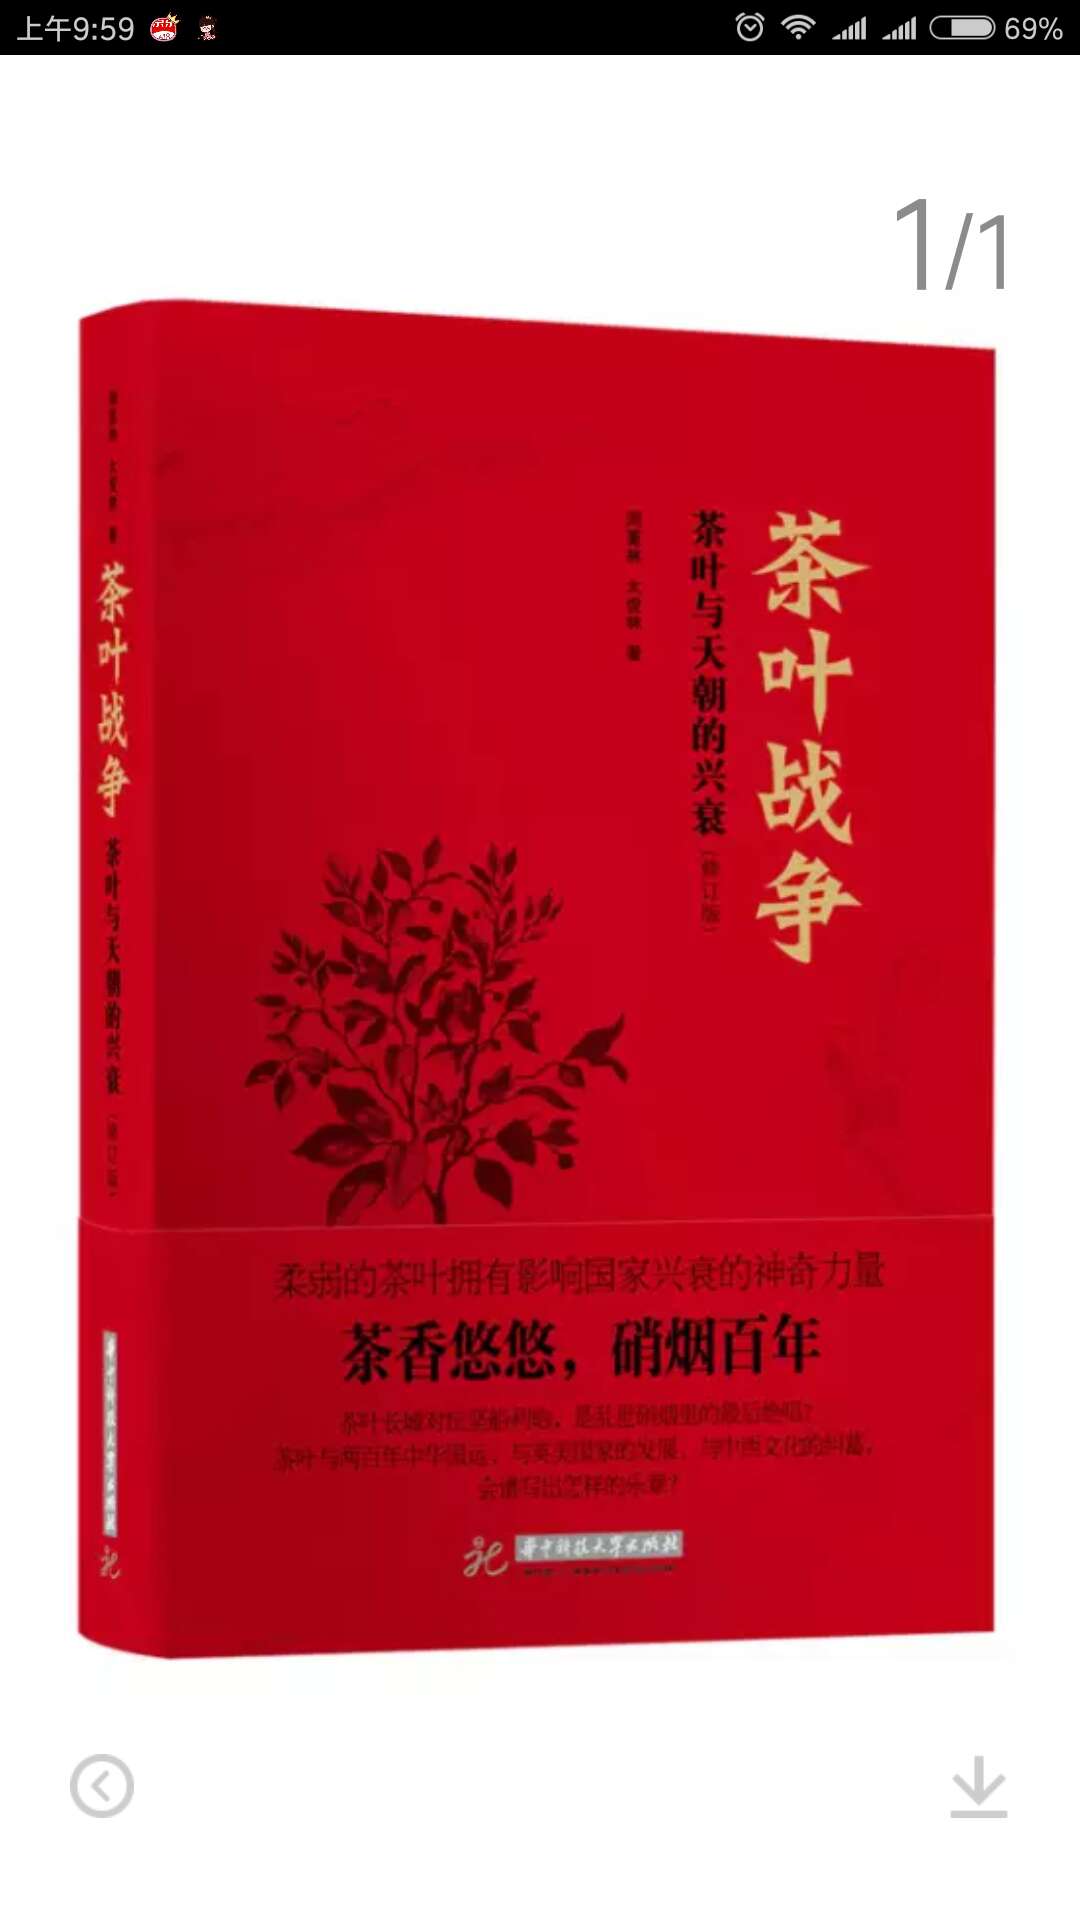 这是一本图文并茂，将白茶的历史放在中国茶叶史上，放在中国近代史中去解读，文笔细腻。值得一读。它的装订模式尤其让我耳目一新。